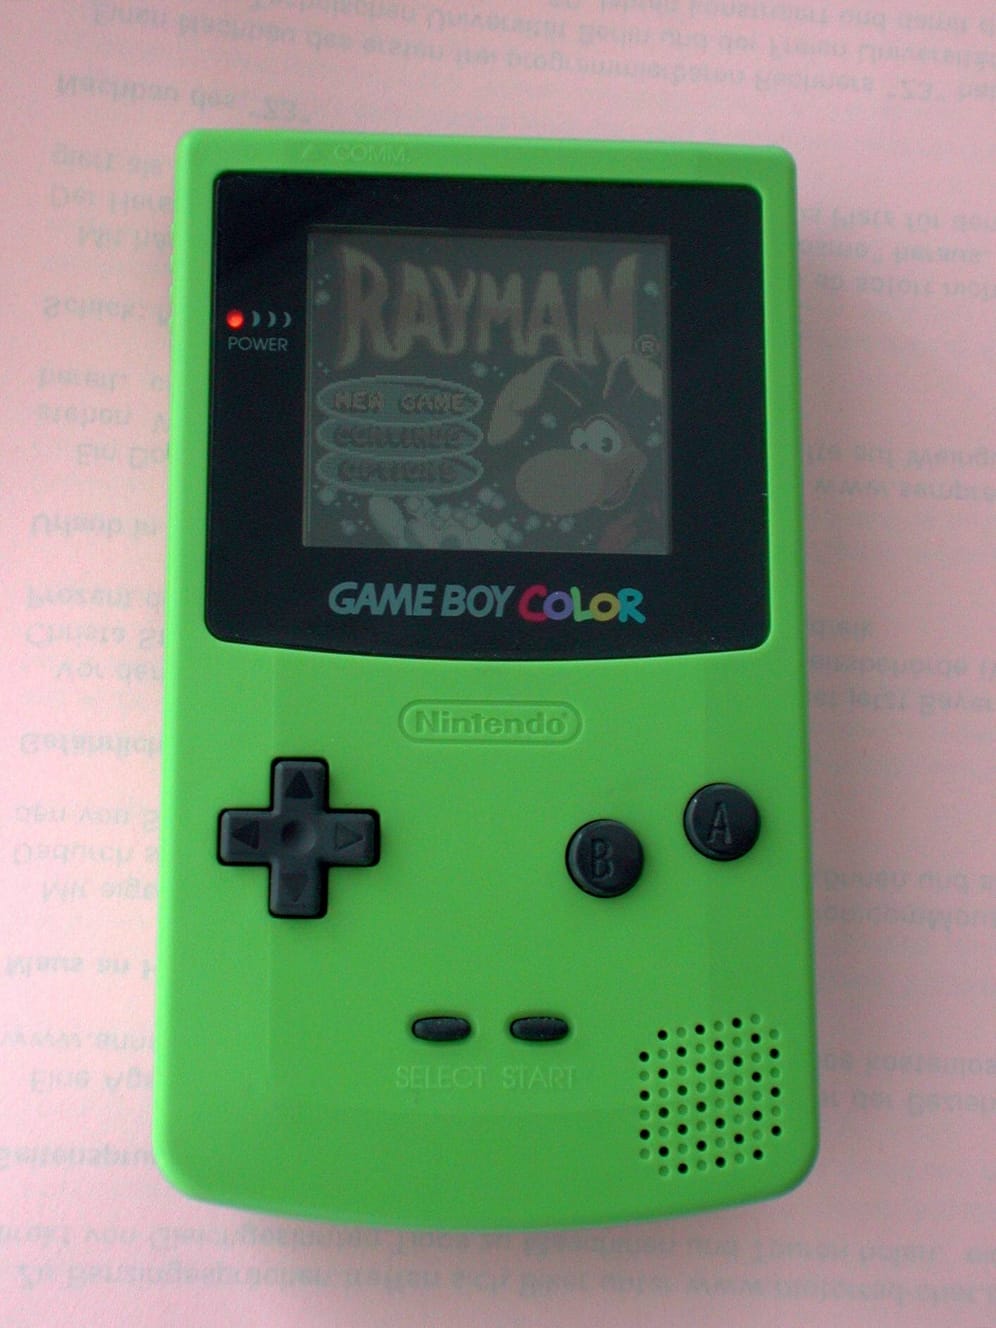 Der Game Boy Color von 1998 war Nintendos erste Handheld-Konsole mit Farbbildschirm: Knapp 56 Farben aus einer Palette von etwa 32.000 Farben konnte das Gerät darstellen. Als Auflösung nennt Nintendo 160 zu 140 Pixel. Beim Game Boy waren es 160 zu 144 Pixel. Neu war neben mehr Rechenleistung auch eine Infrarotschnittstelle. Dadurch konnten Spieler bei einigen Games Daten miteinander austauschen.